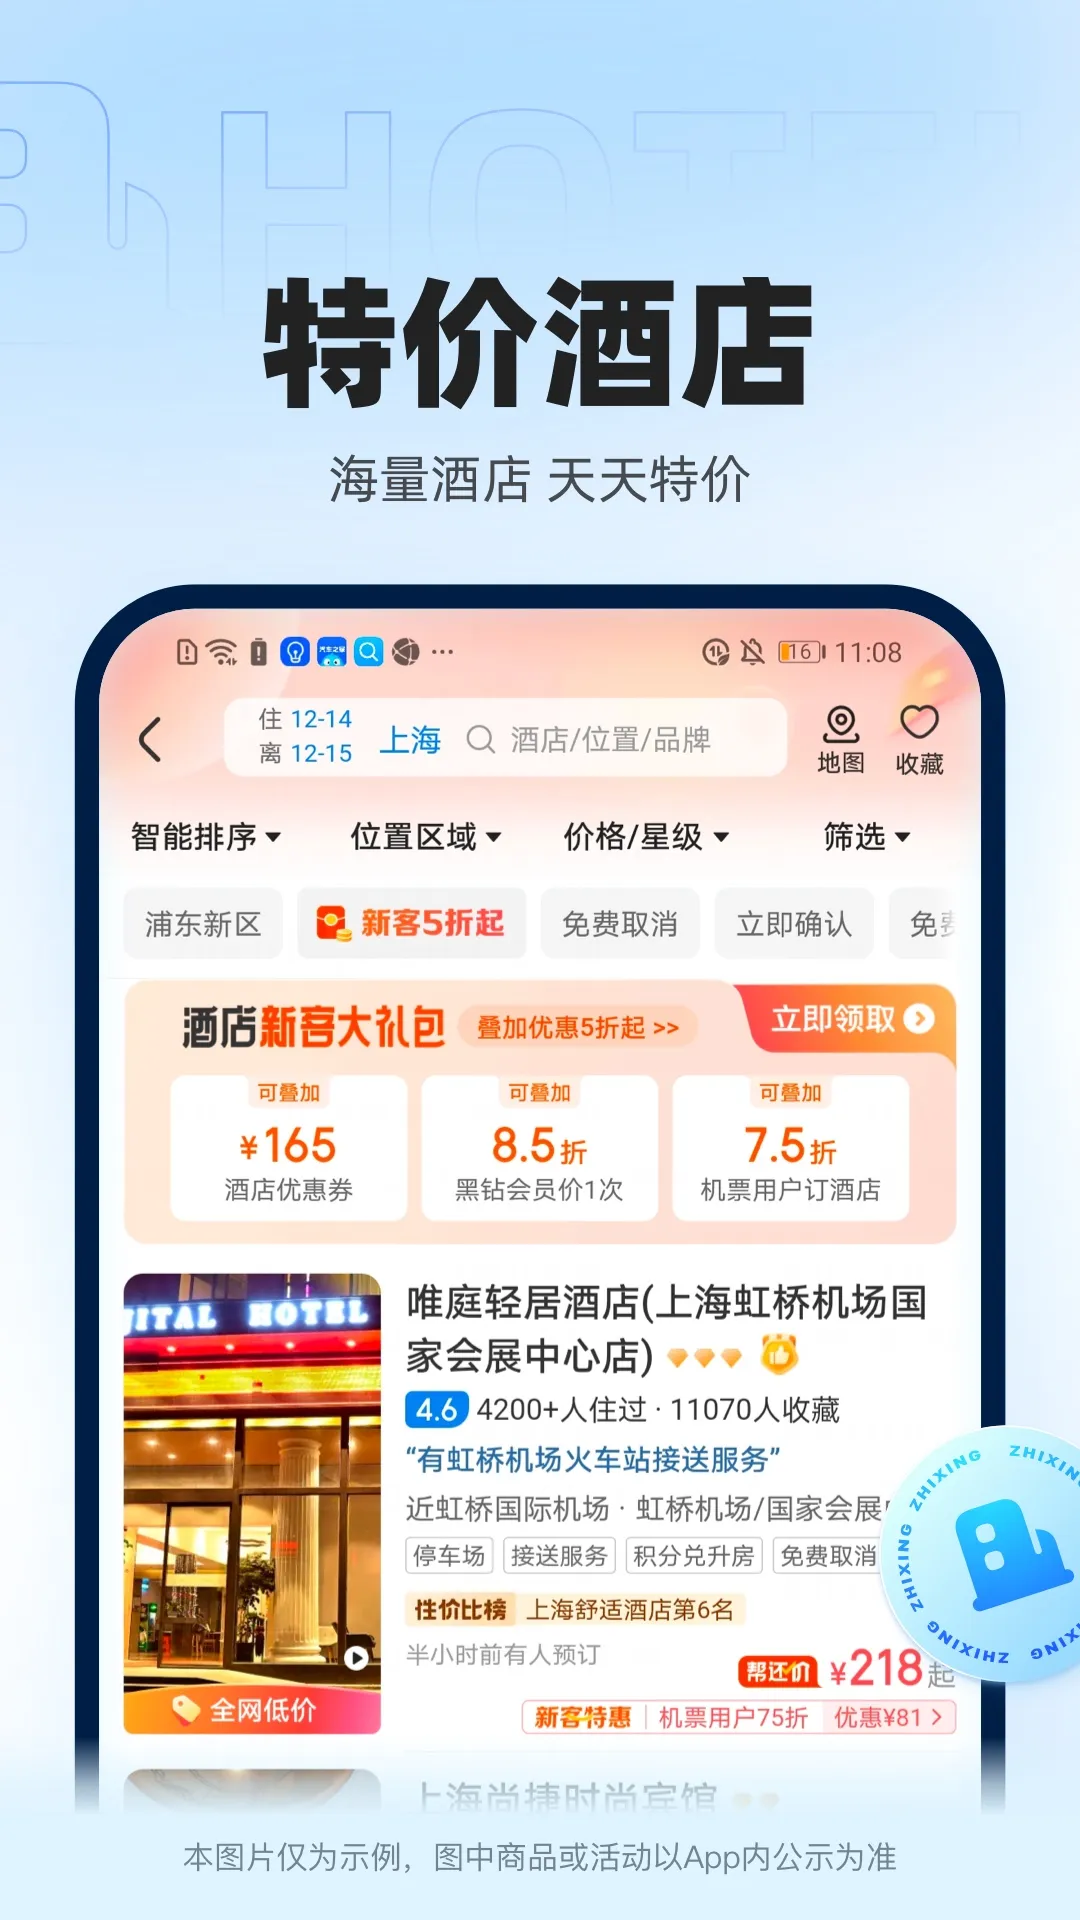 香港城市售票网app推荐 好用的购票软件有哪些